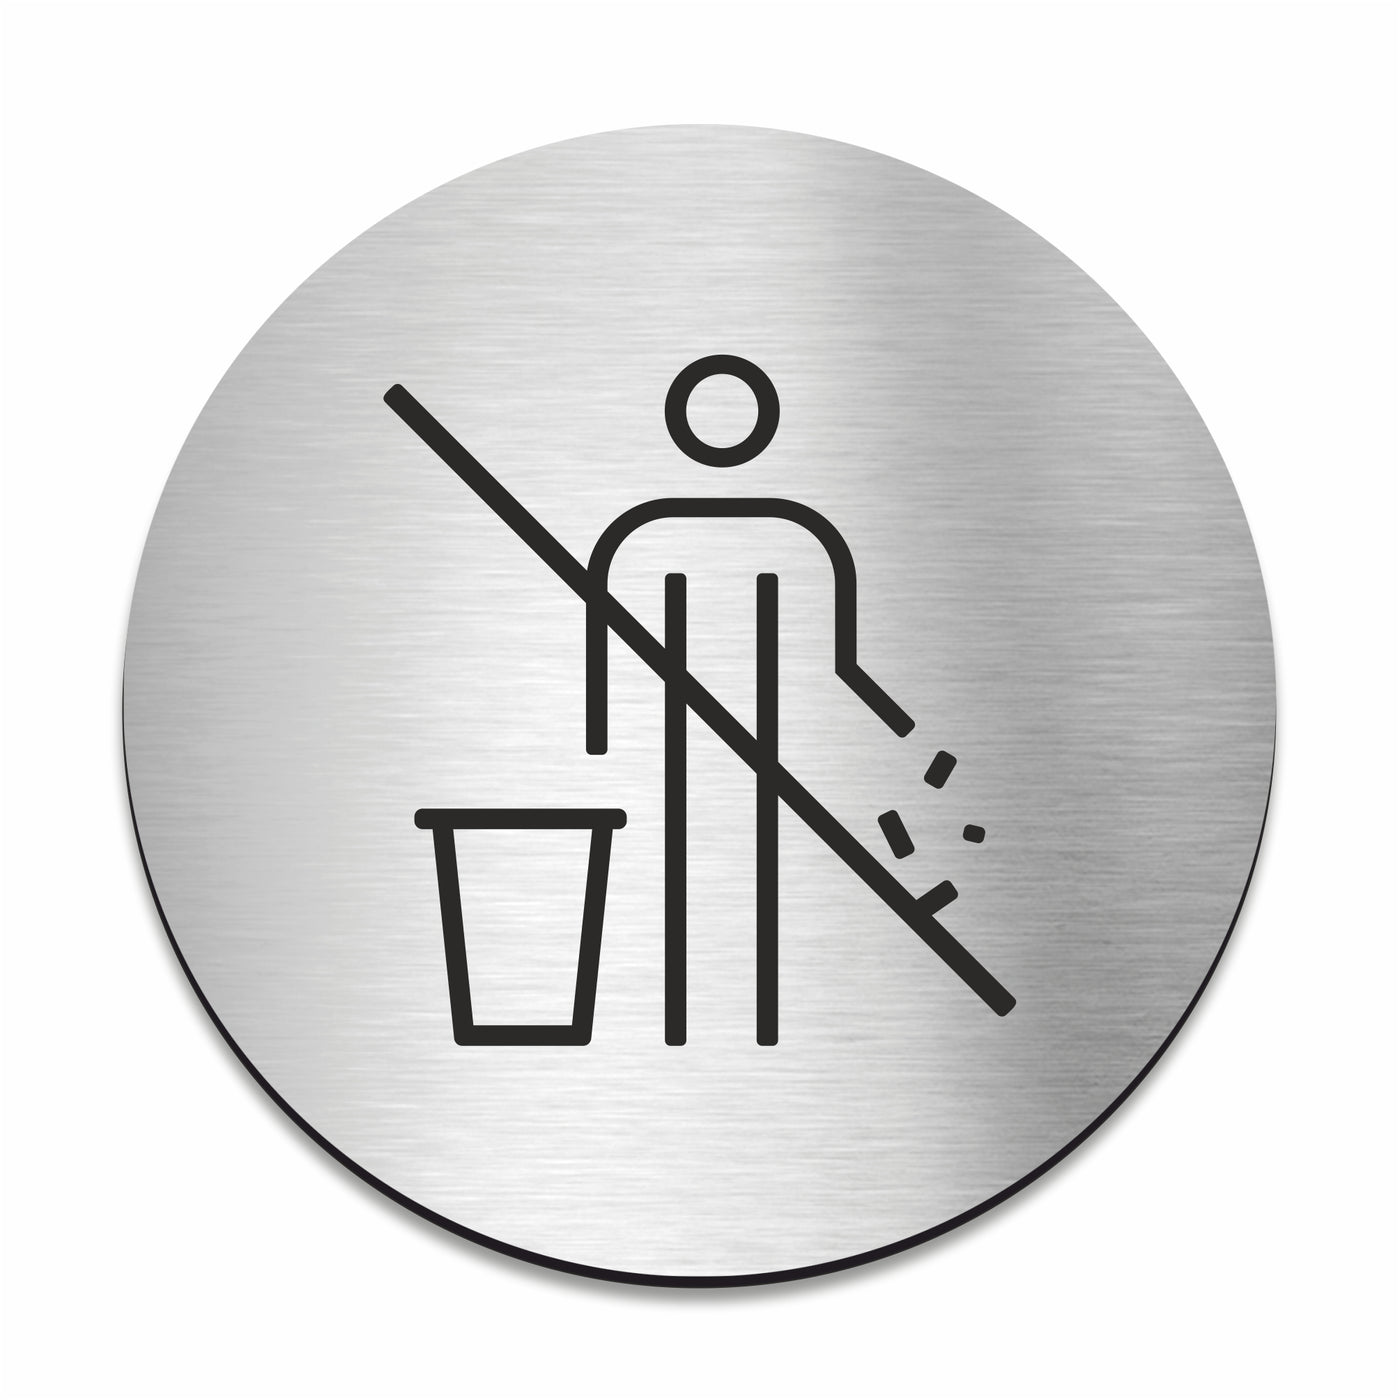 Do Not Litter Sign - Stainless steel